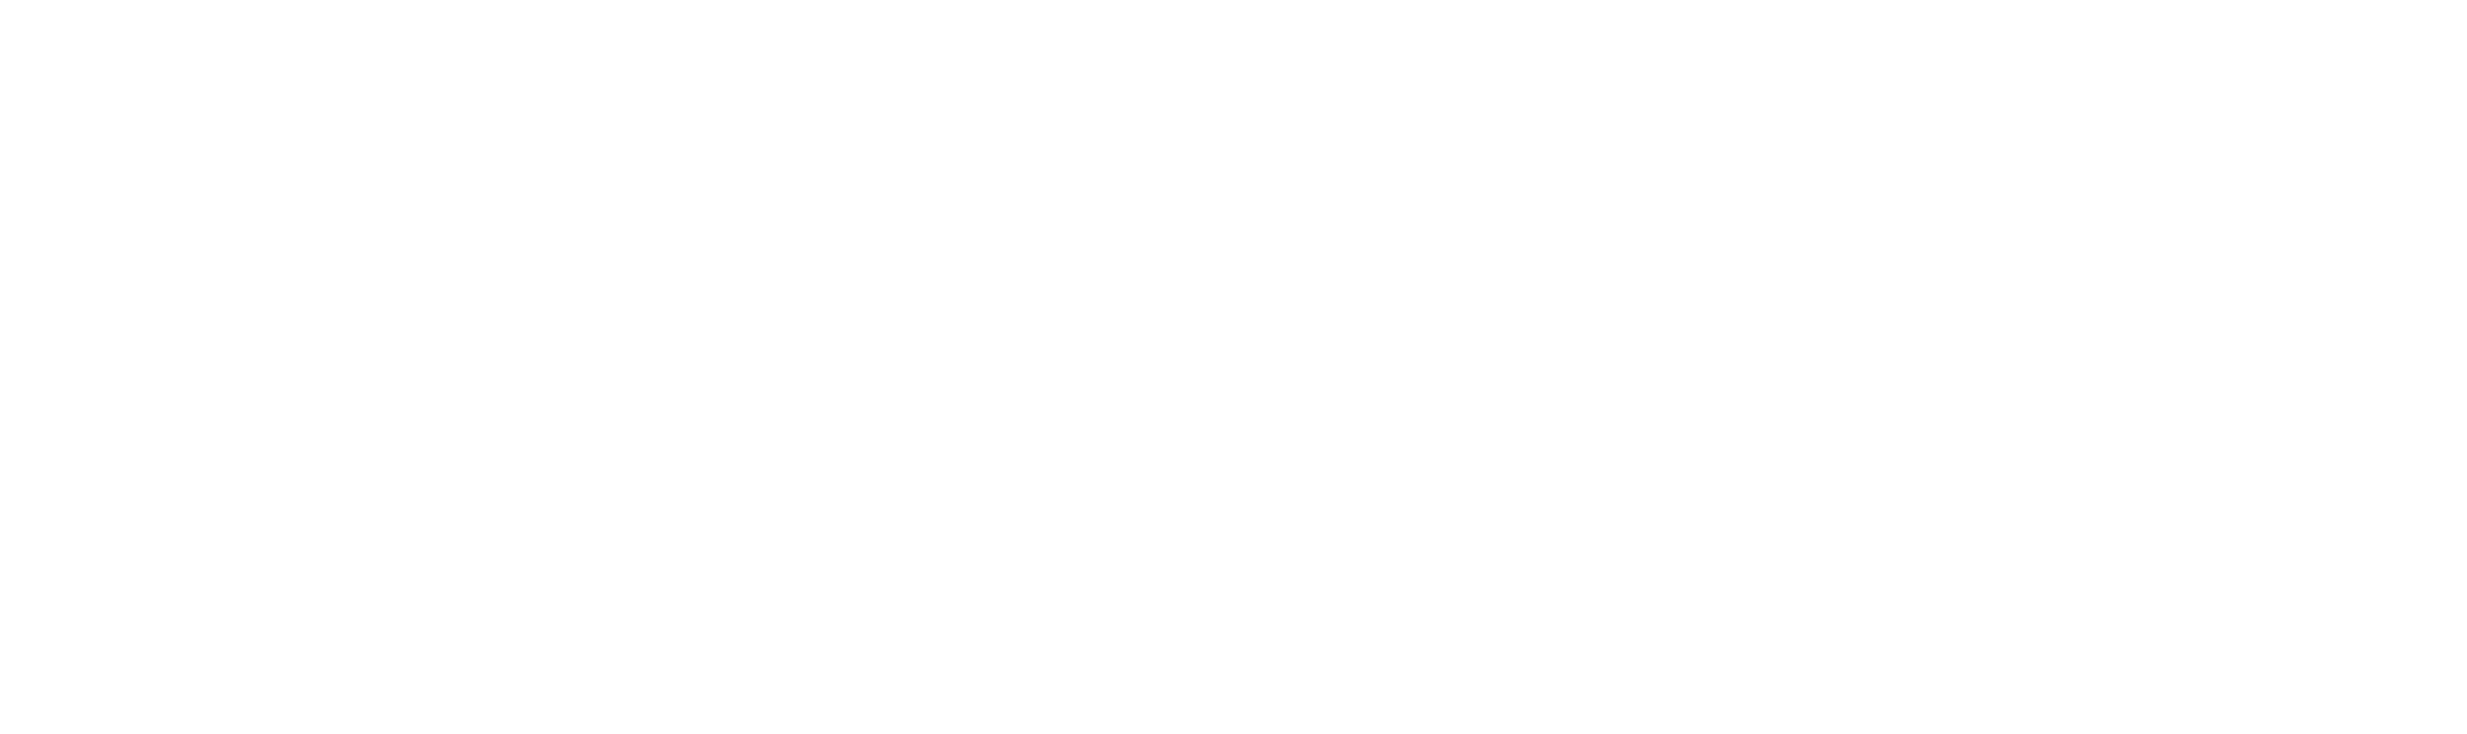 Nextgengolf White Logo